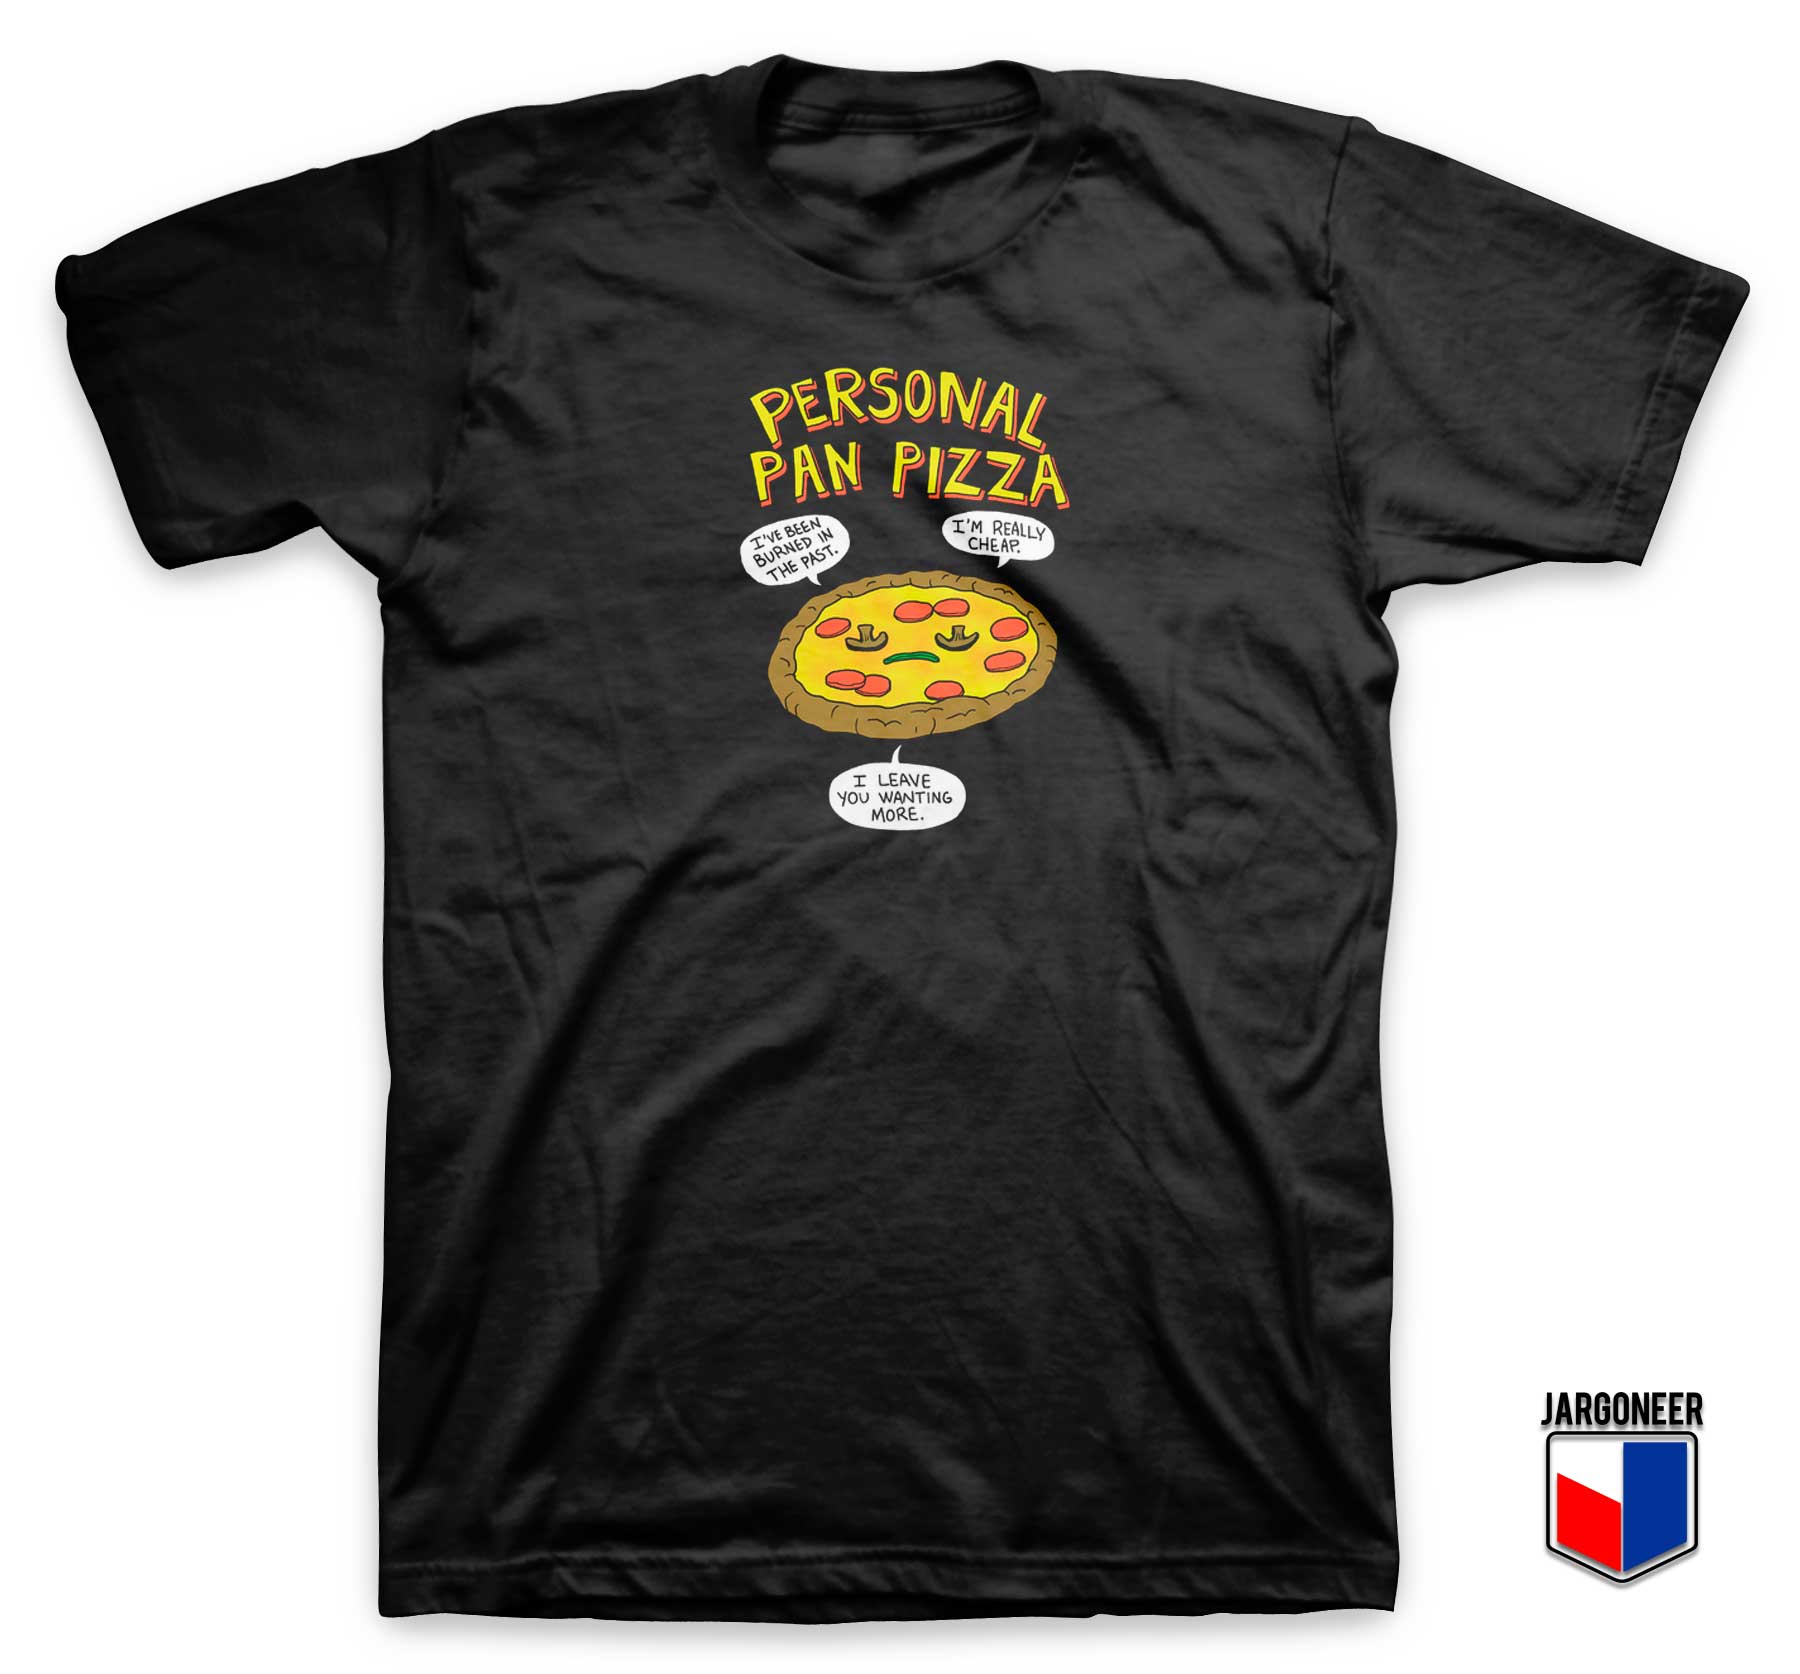 Personal Pan Pizza T Shirt - Shop Unique Graphic Cool Shirt Designs